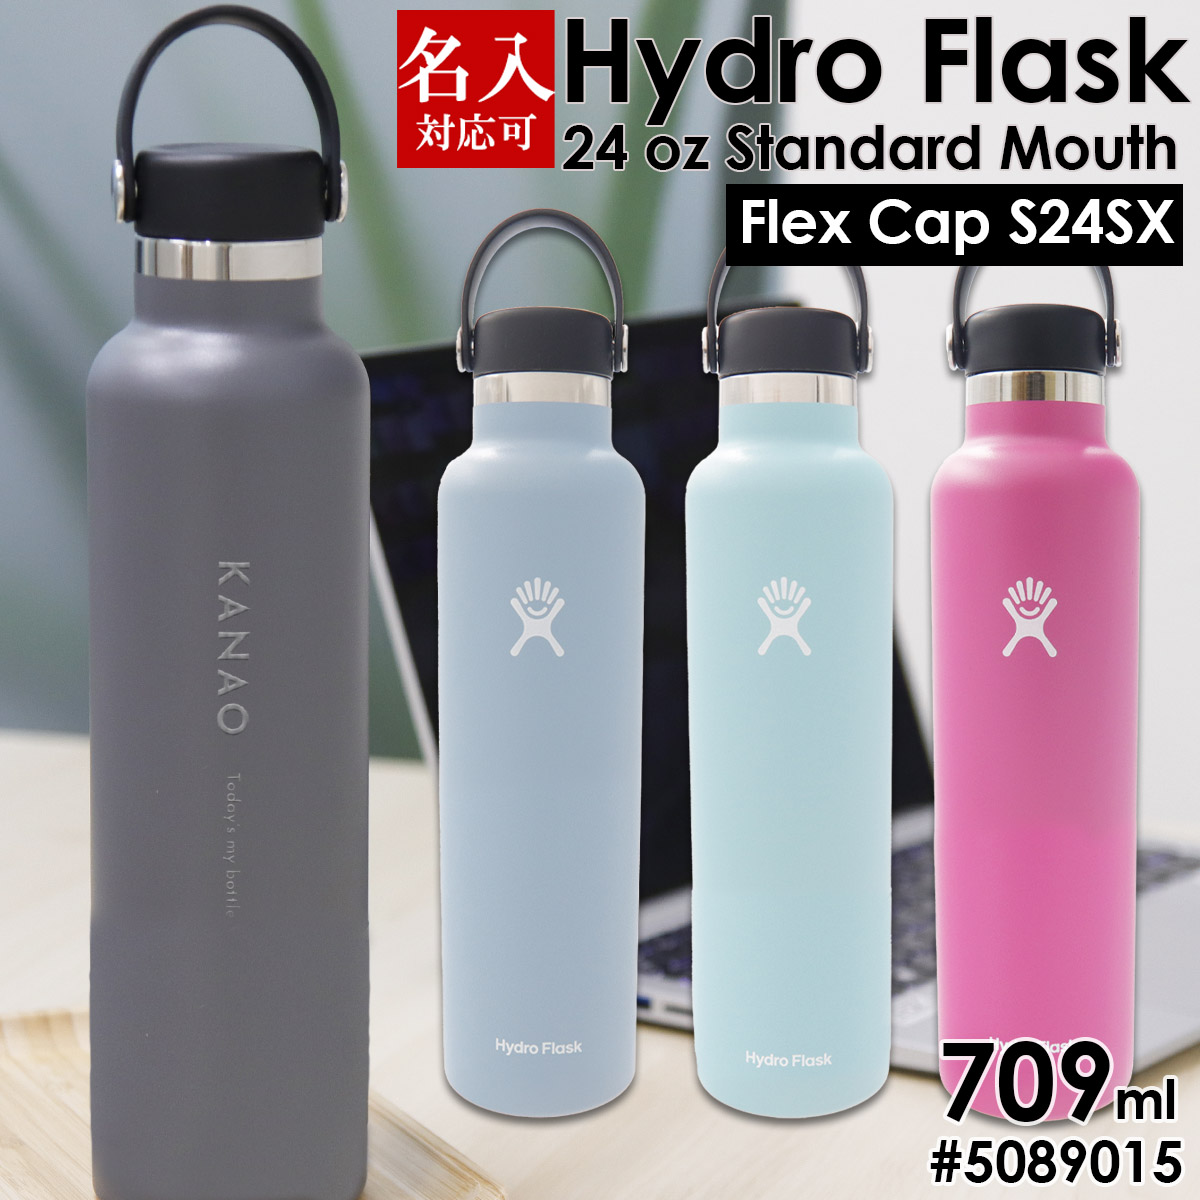 Hydro Flask(ハイドロフラスク) HYDRATION_スタンダード_24oz 709ml 01ホワイト 5089015 24oz  JimEqgwuFo, アウトドア、釣り、旅行用品 - phoenix.ge